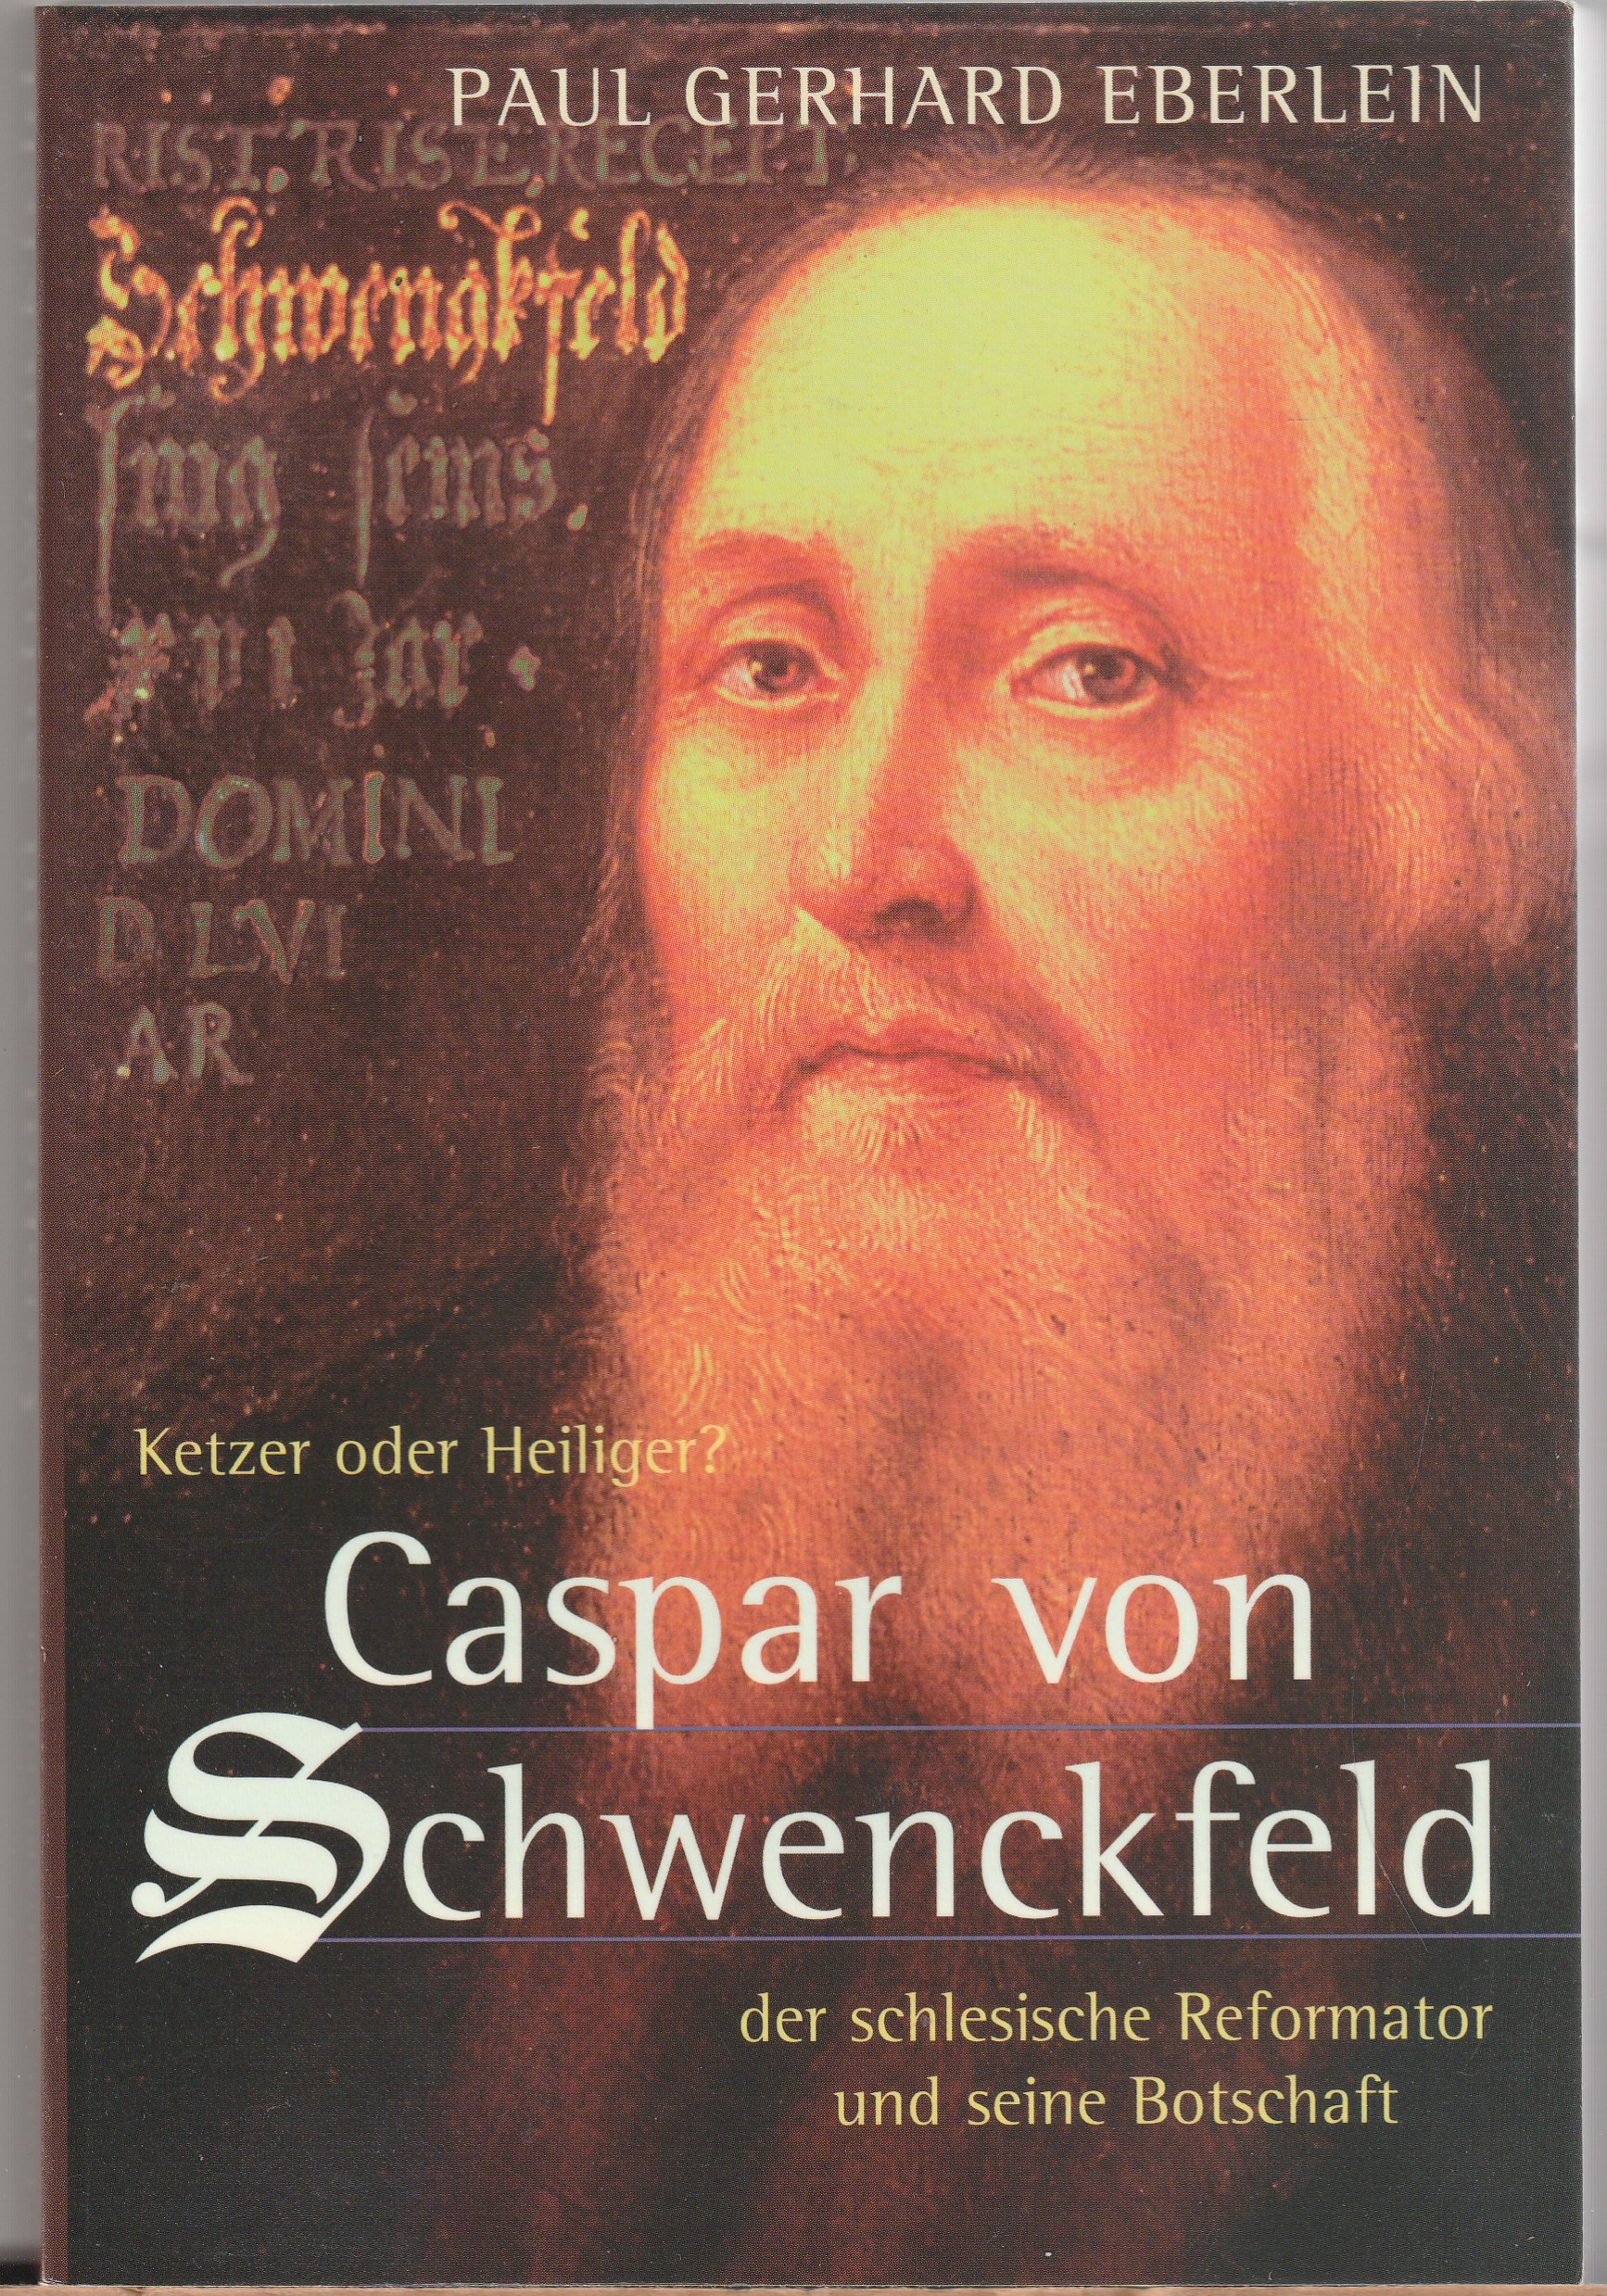 Ketzer oder Heiliger? Der schlesische Reformator Caspar von Schwenckfeld und seine Botschaft - Eberlein, Paul Gerhard